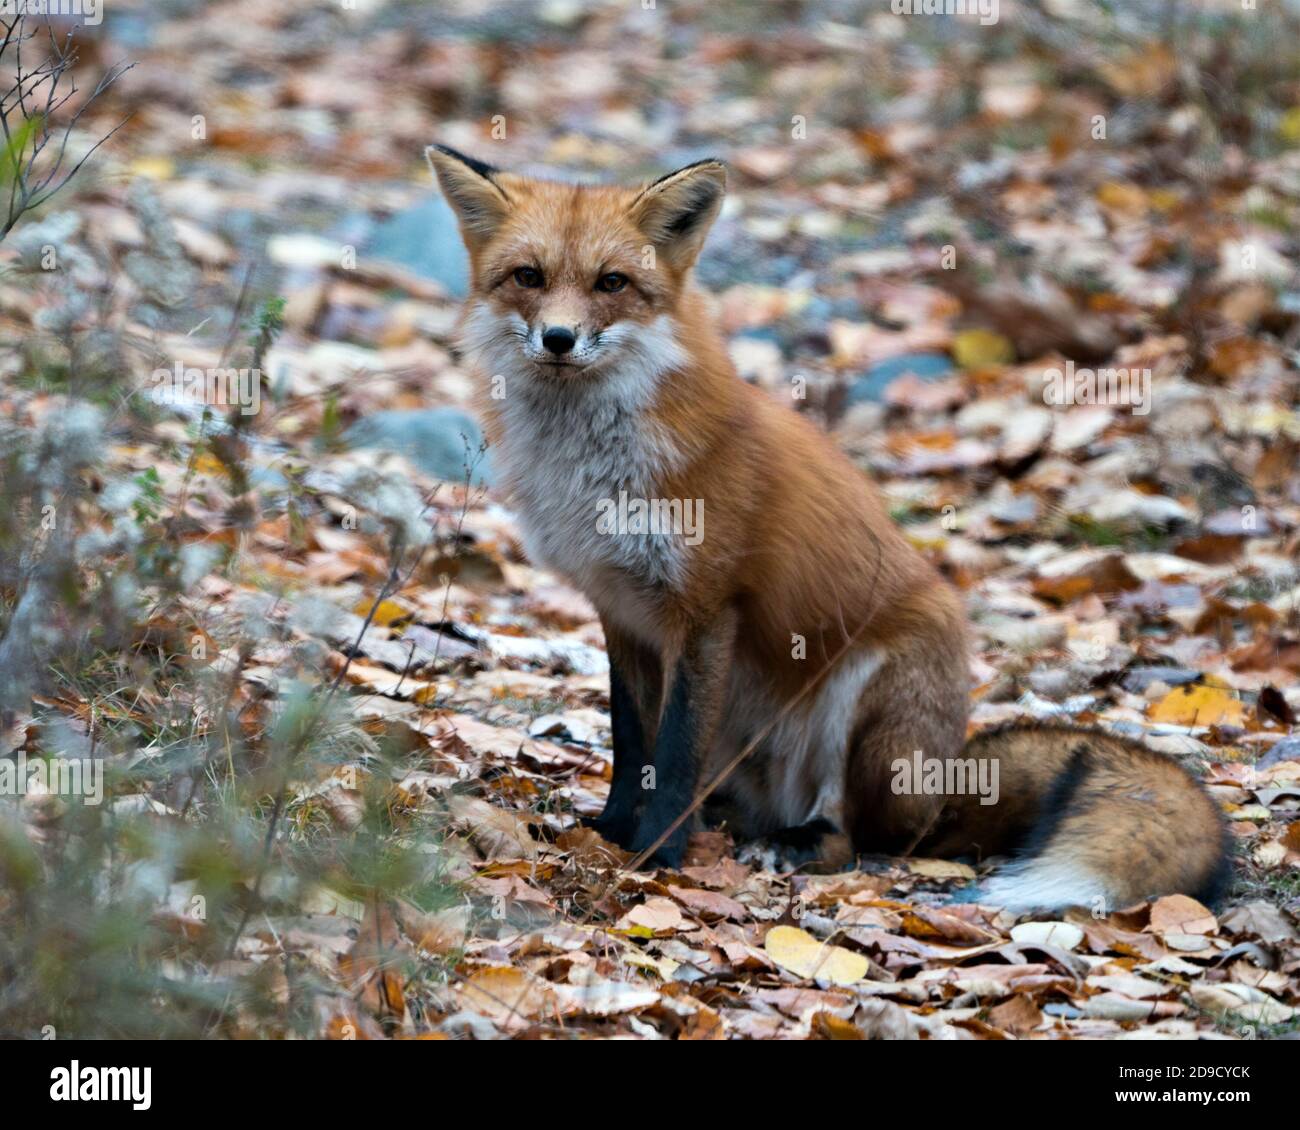 Vista del profilo in primo piano con volpe rossa, coda di volpe con sfondo sfocato nell'ambiente e nell'habitat. Immagine FOX. Foto FOX. Ritratto FOX. Foto Stock